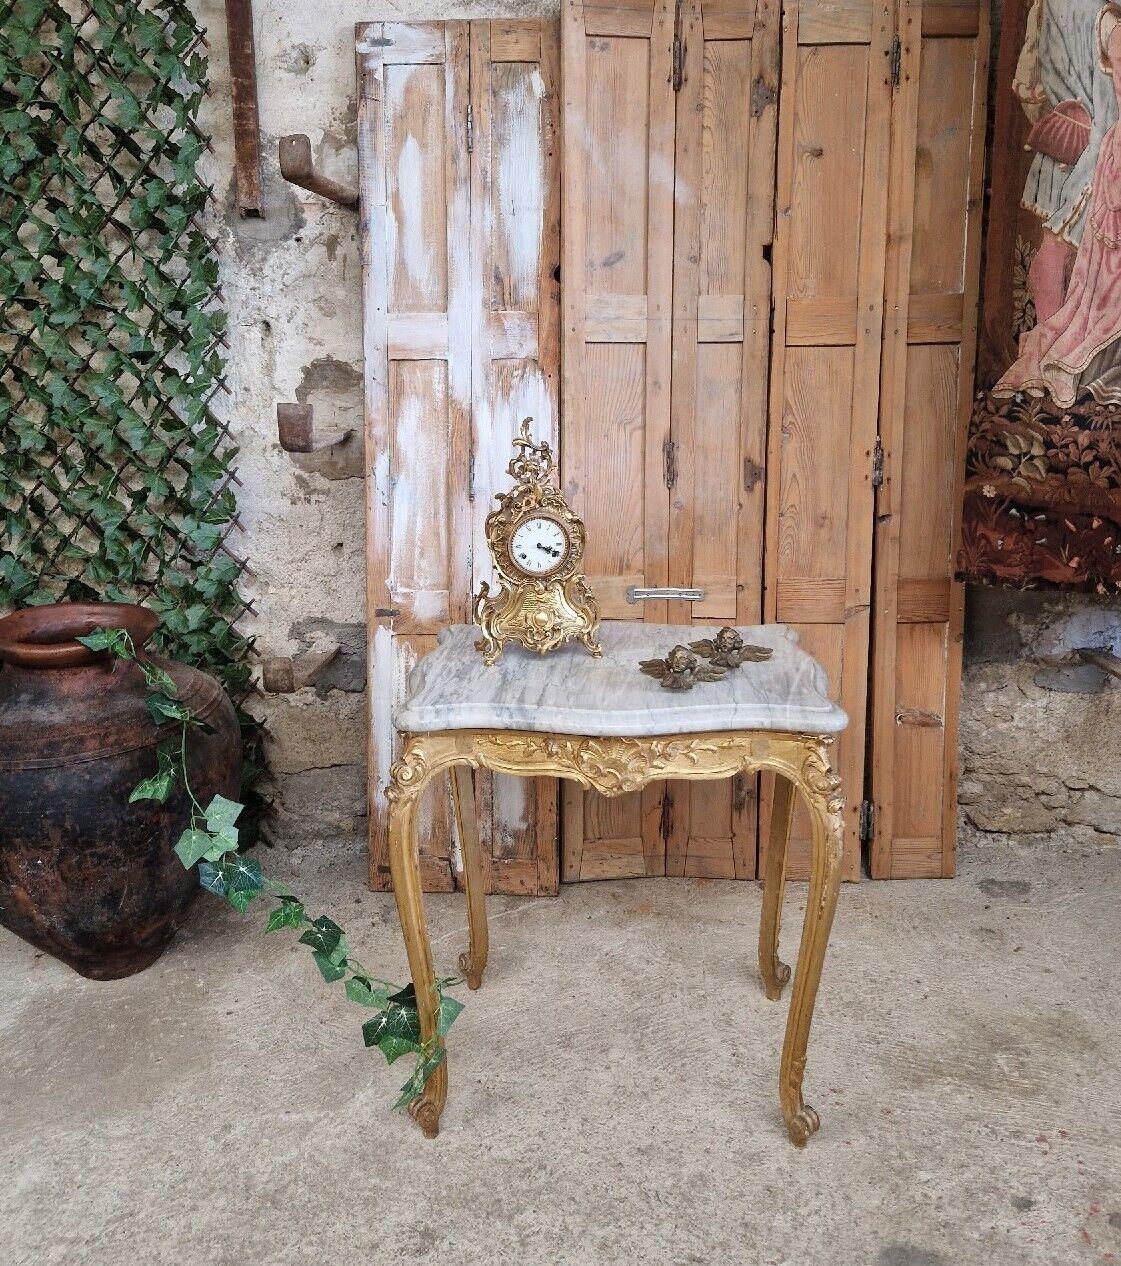 Dieser schöne französische Akzenttisch ist rechteckig und ideal für viele Zwecke und kann in jedem Raum untergebracht werden.

Der Tischsockel ist aus vergoldetem Holz und im Louis XV-Stil gehalten. Die Marmorplatte ist eine dicke weißgraue